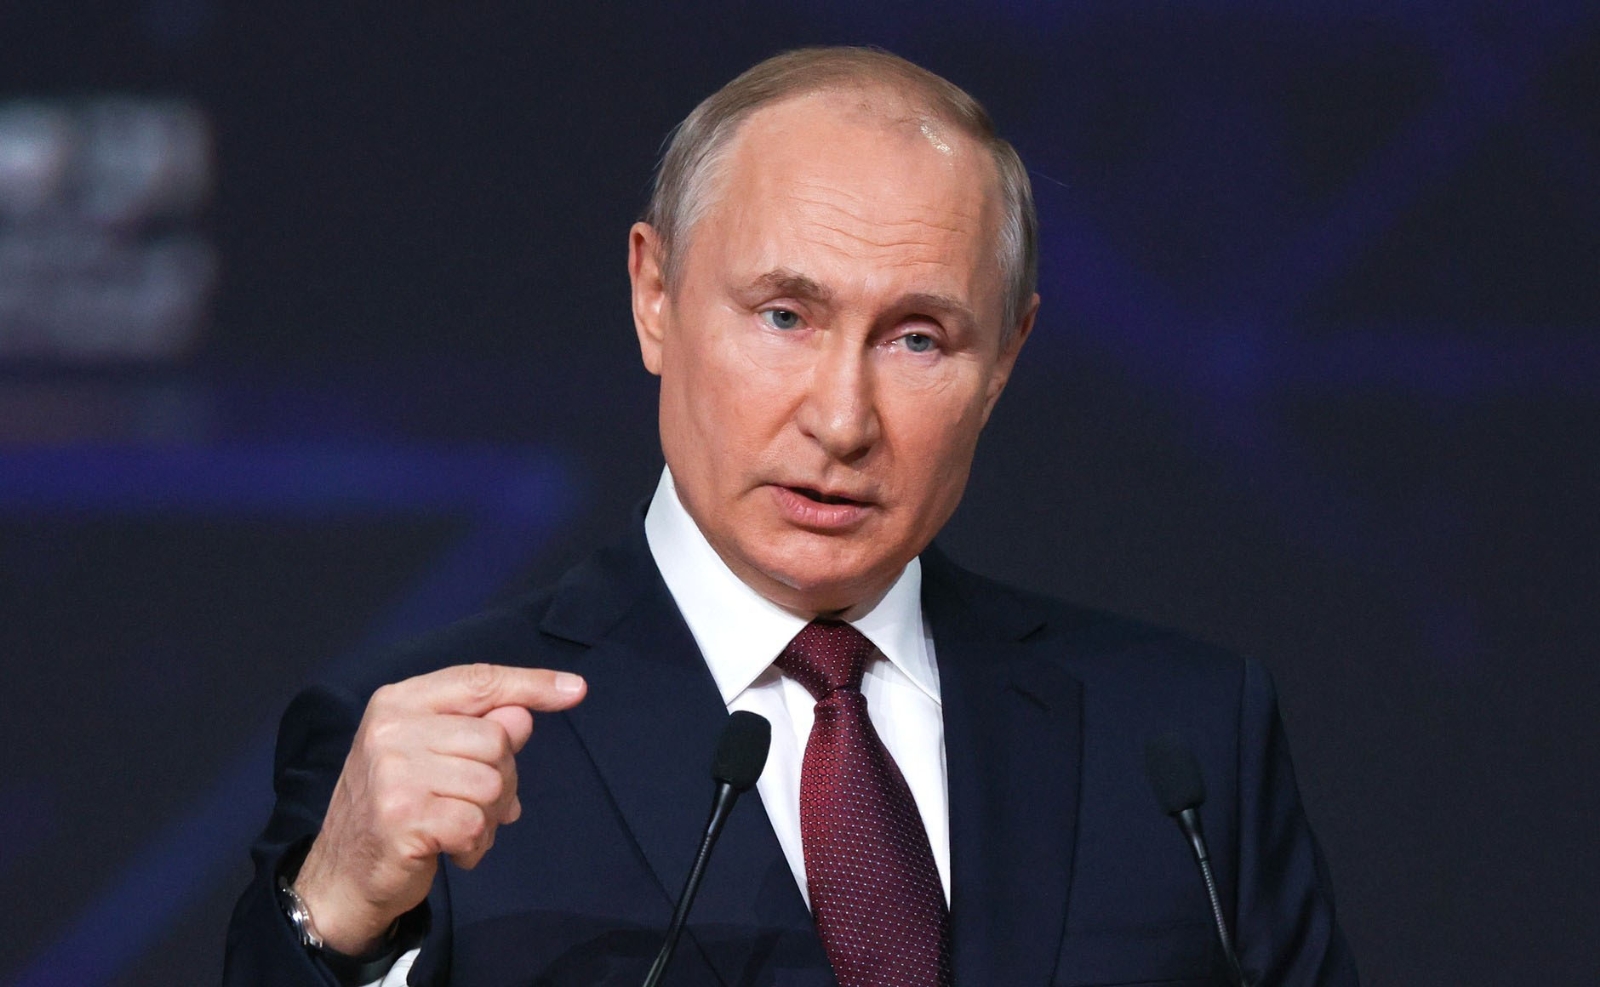 Putin’den açıklama: “Medya, Biden’ı farklı tasvir ediyor, diyalog sürdürmeye hazırım”